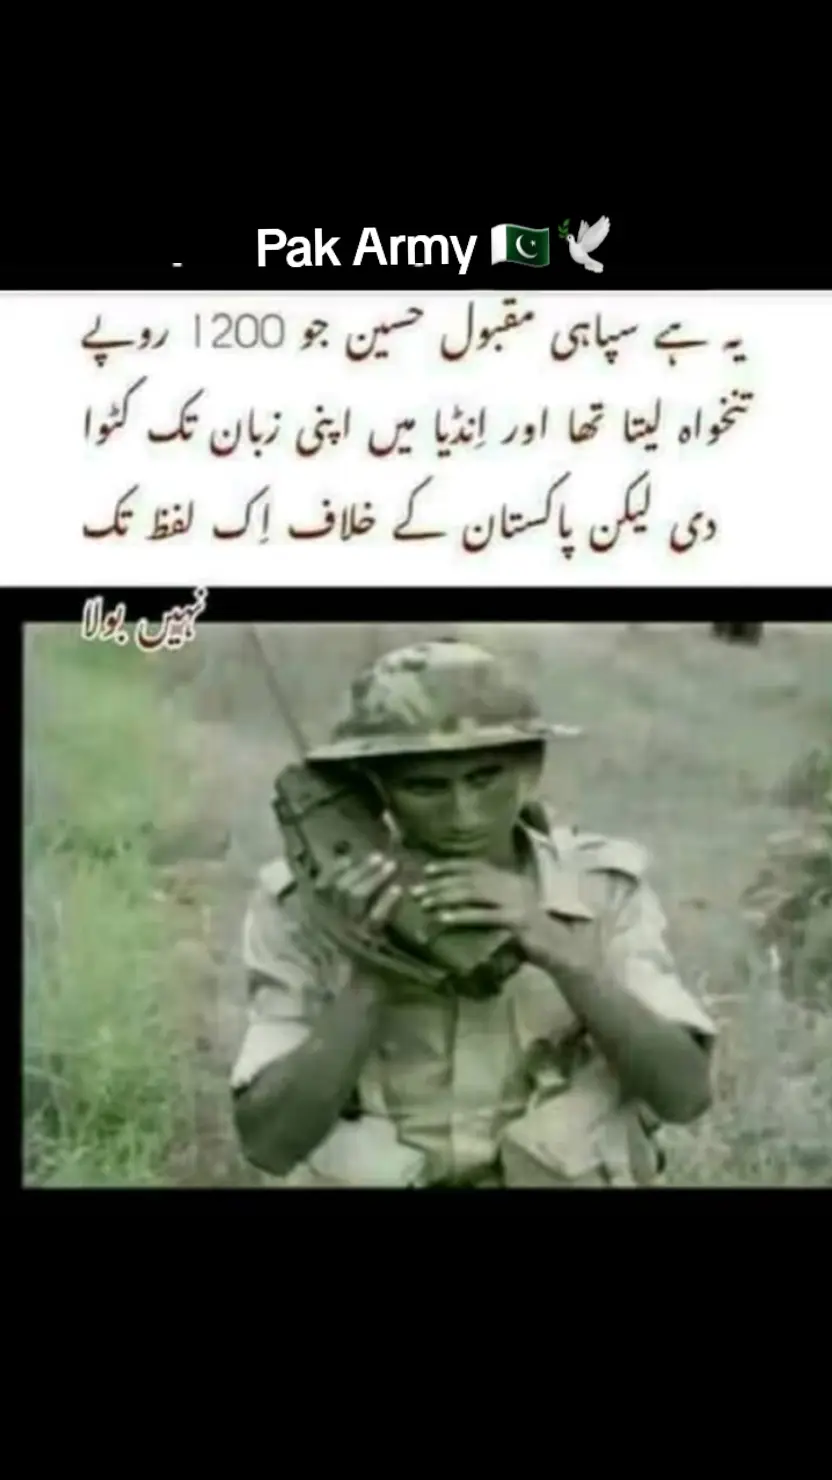 فخر پاکستان ۔۔۔۔۔....Pak Army🇵🇰🕊#pakarmy #viralvideo #pakistan #fyp #viral 